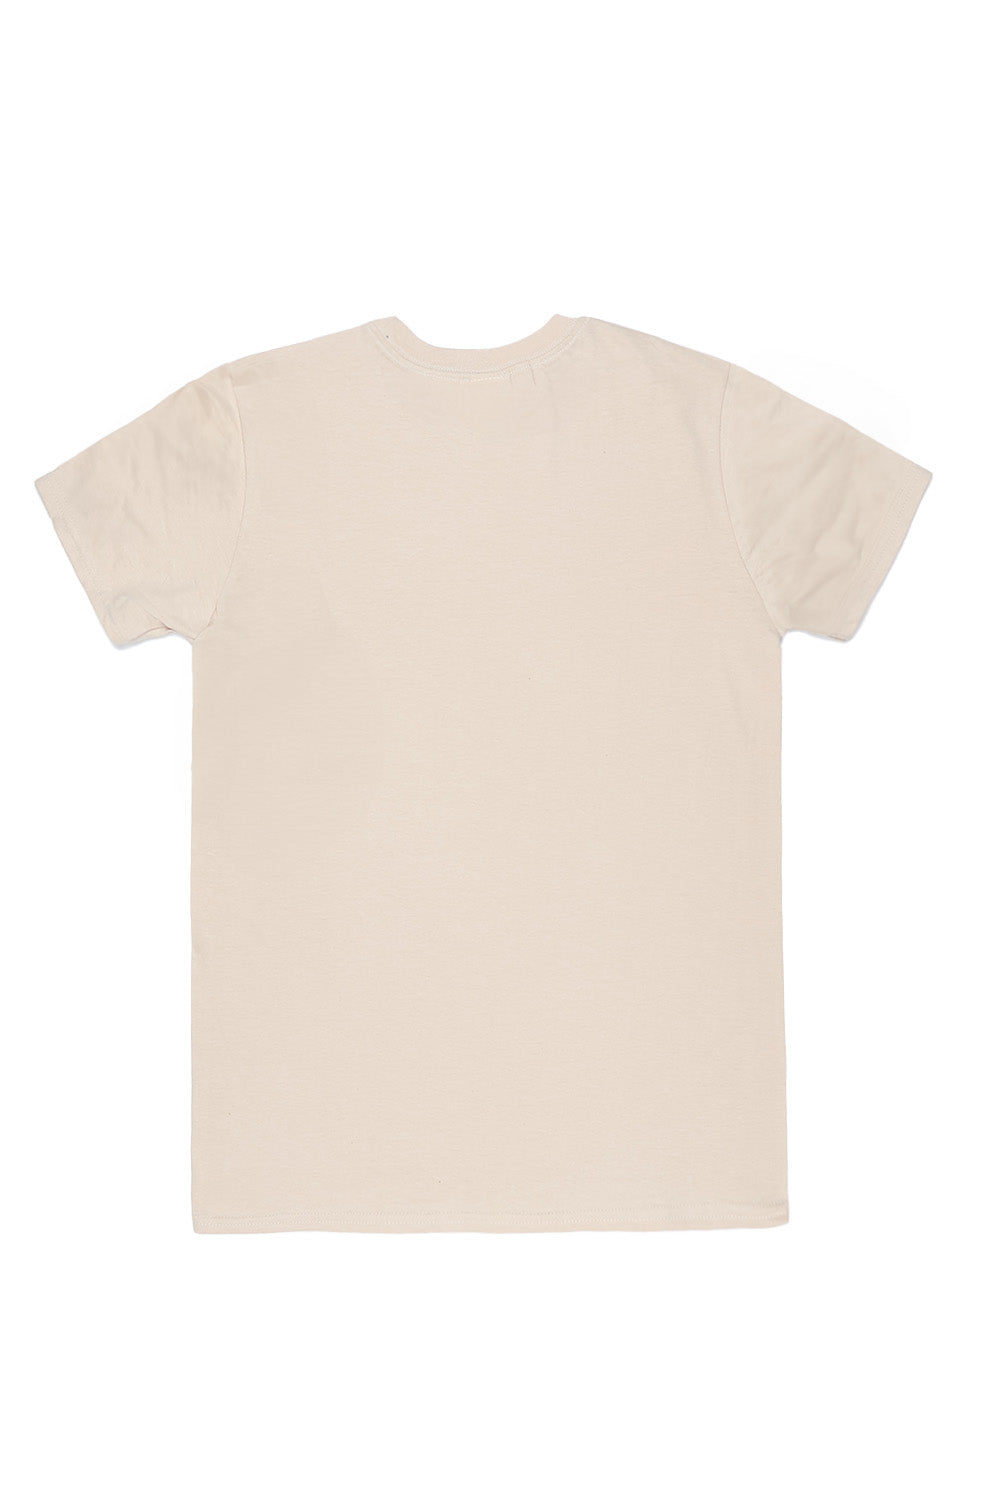 Inner Peace T-Shirt in Sand (Custom Packs)